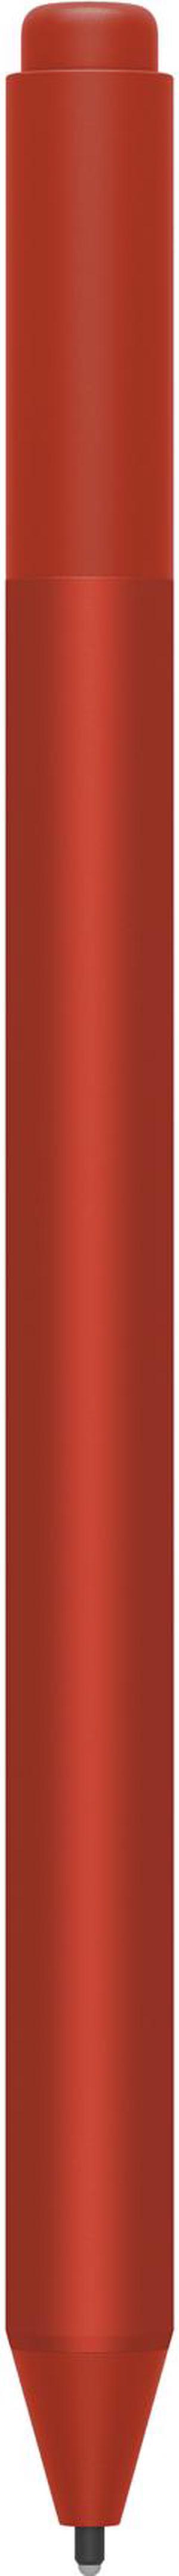 Microsoft Surface Pen M1776 (EYU-00041) - Poppy Red